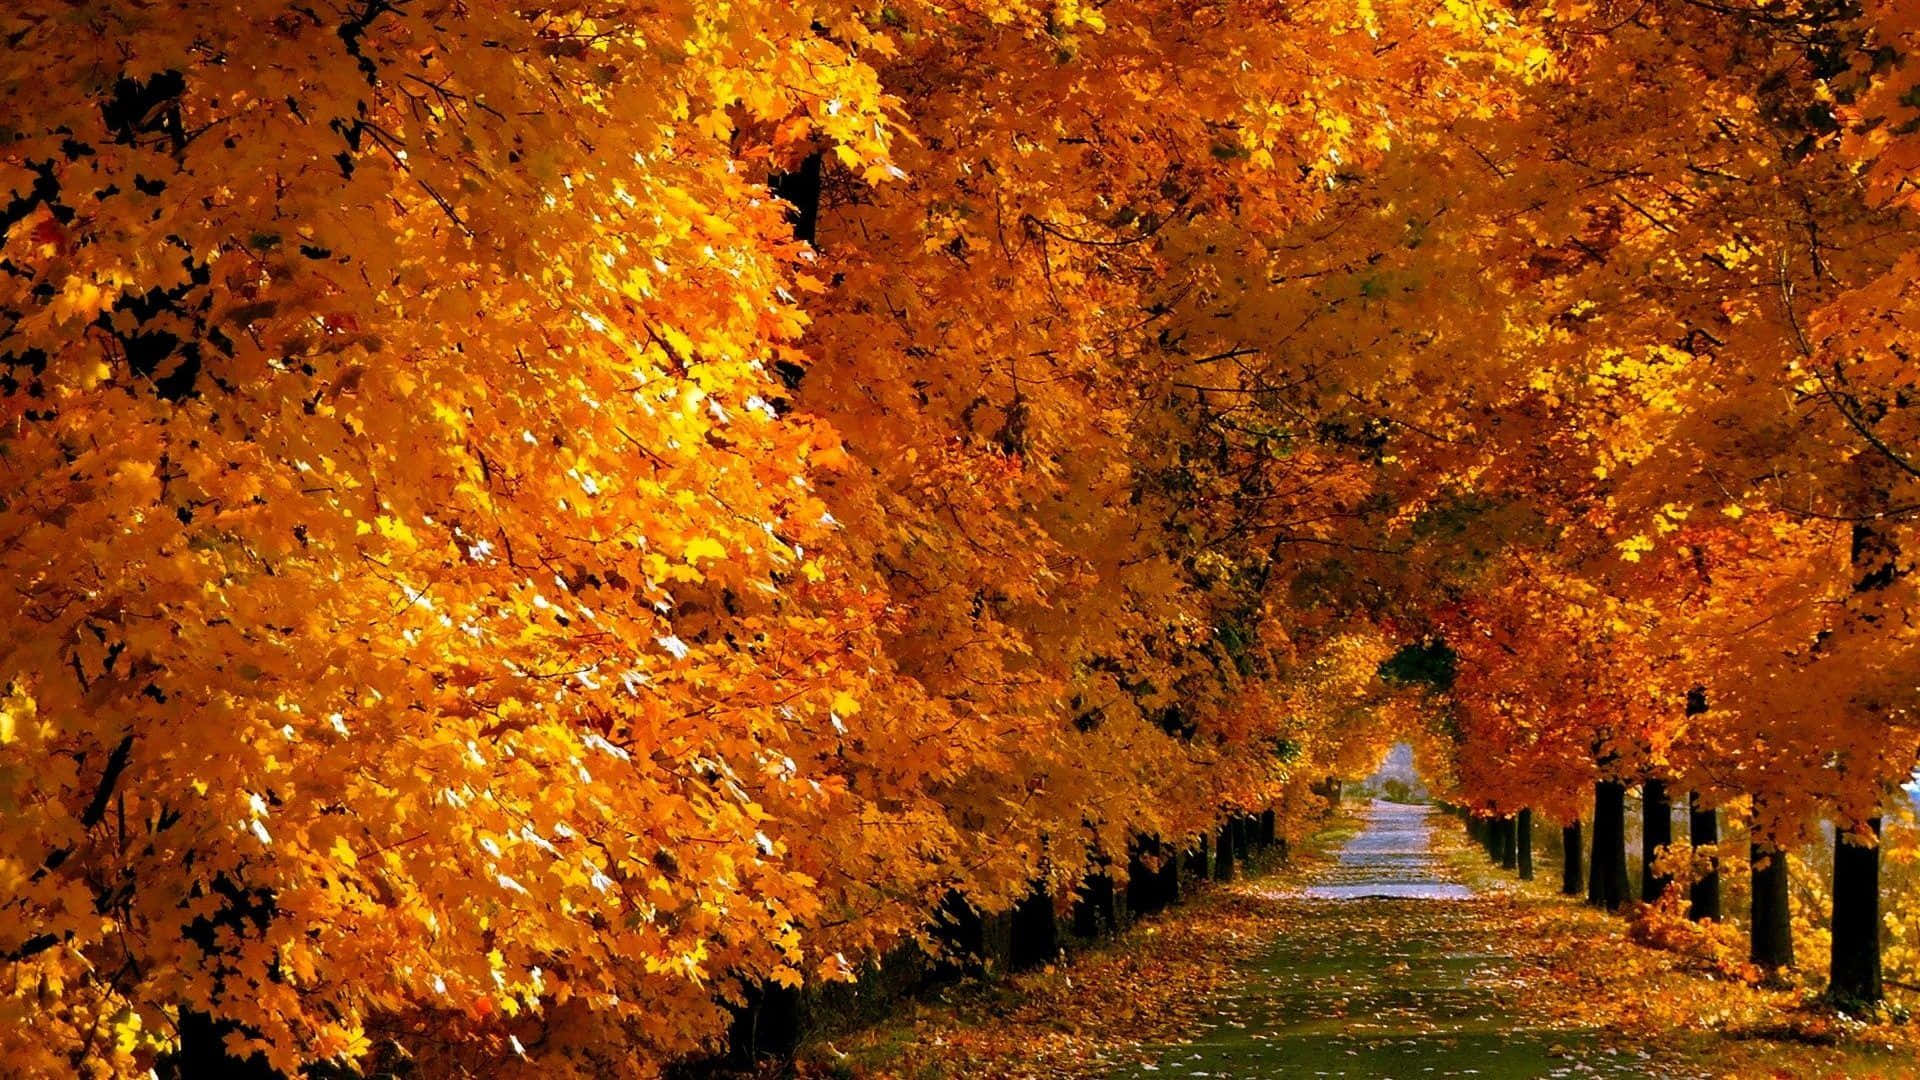 Sunlit road during autumn